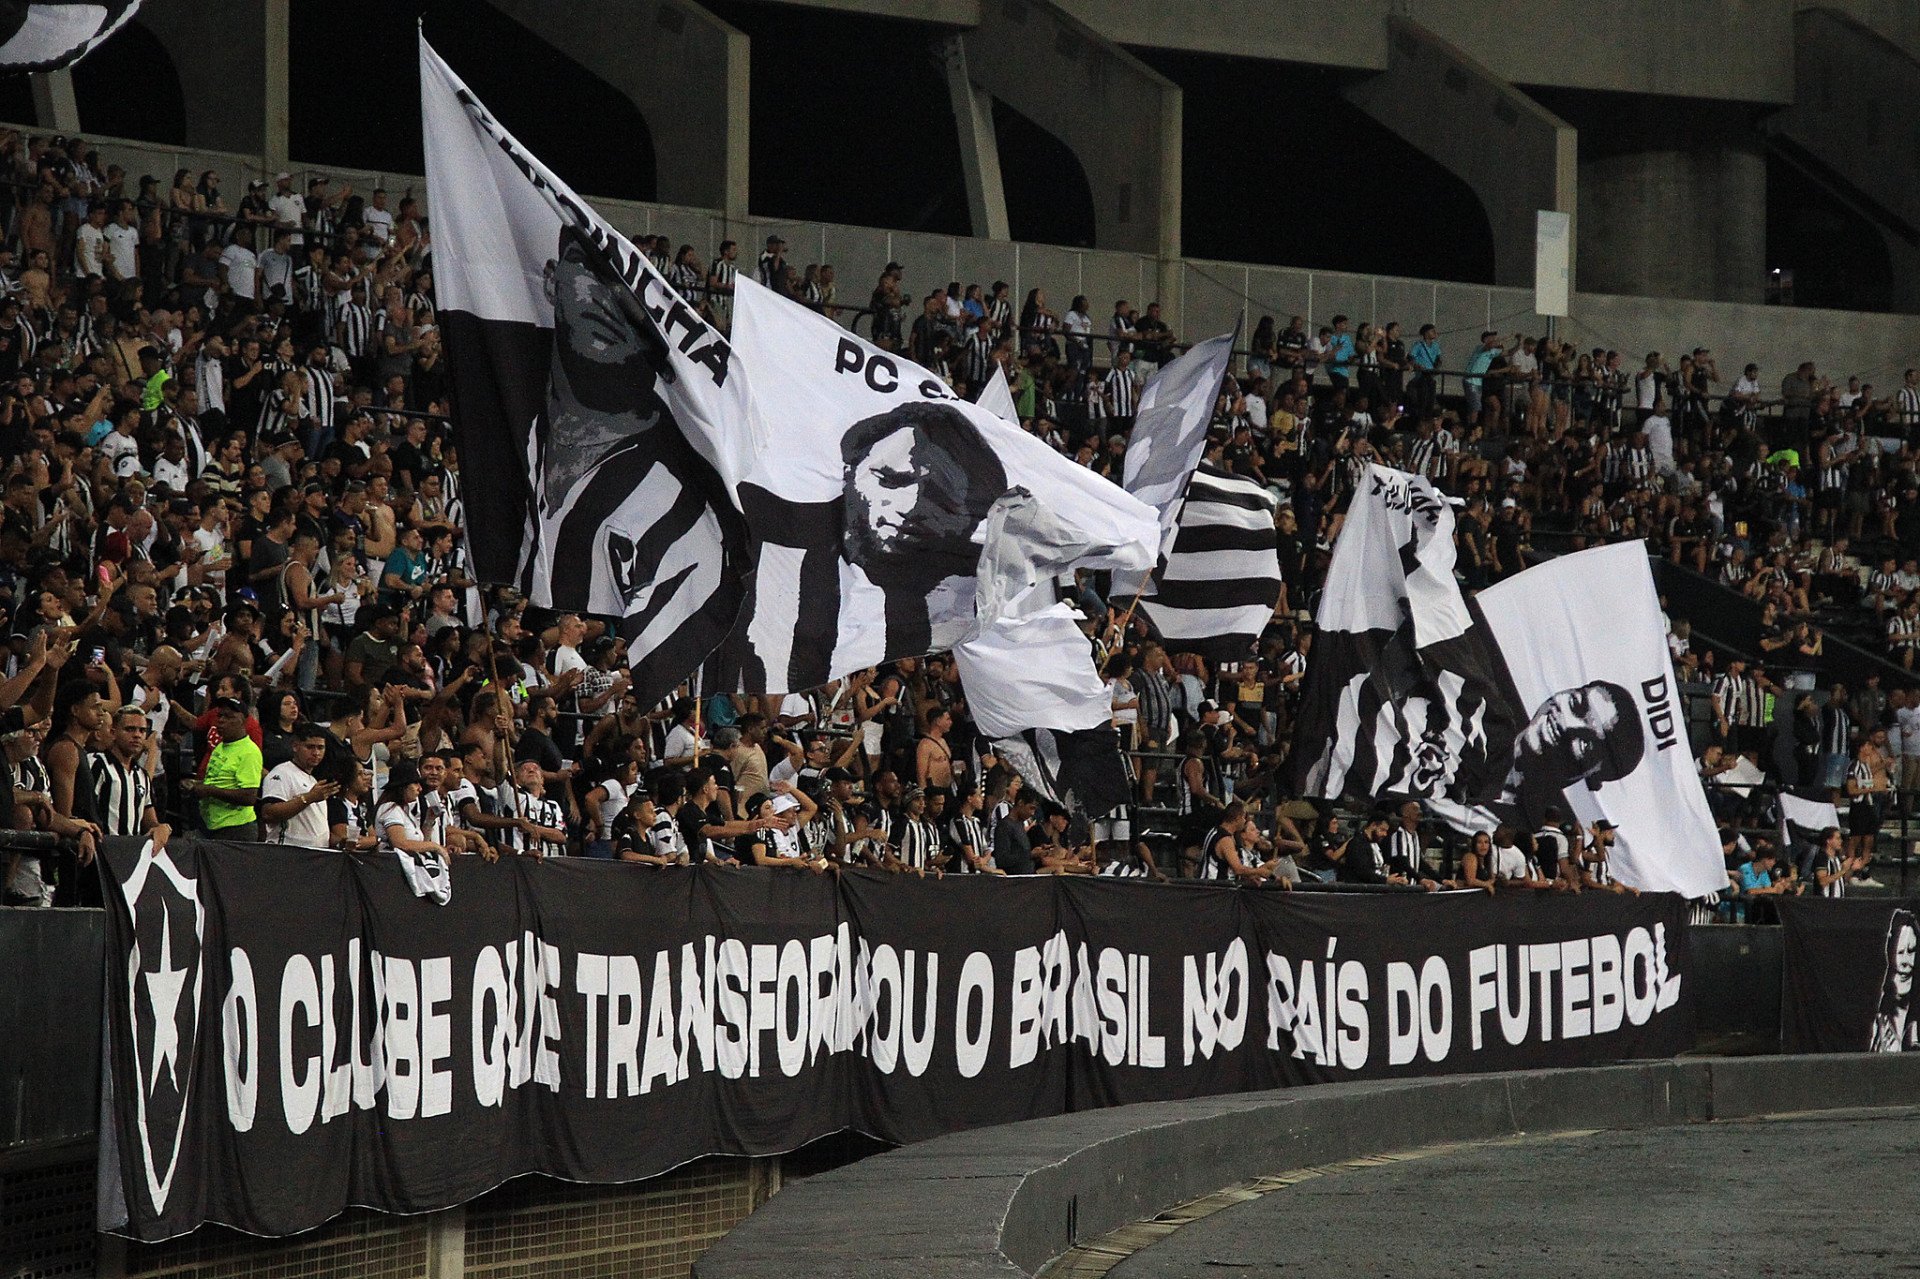 STJD nega liminar do Botafogo e jogo contra o Fortaleza está adiado